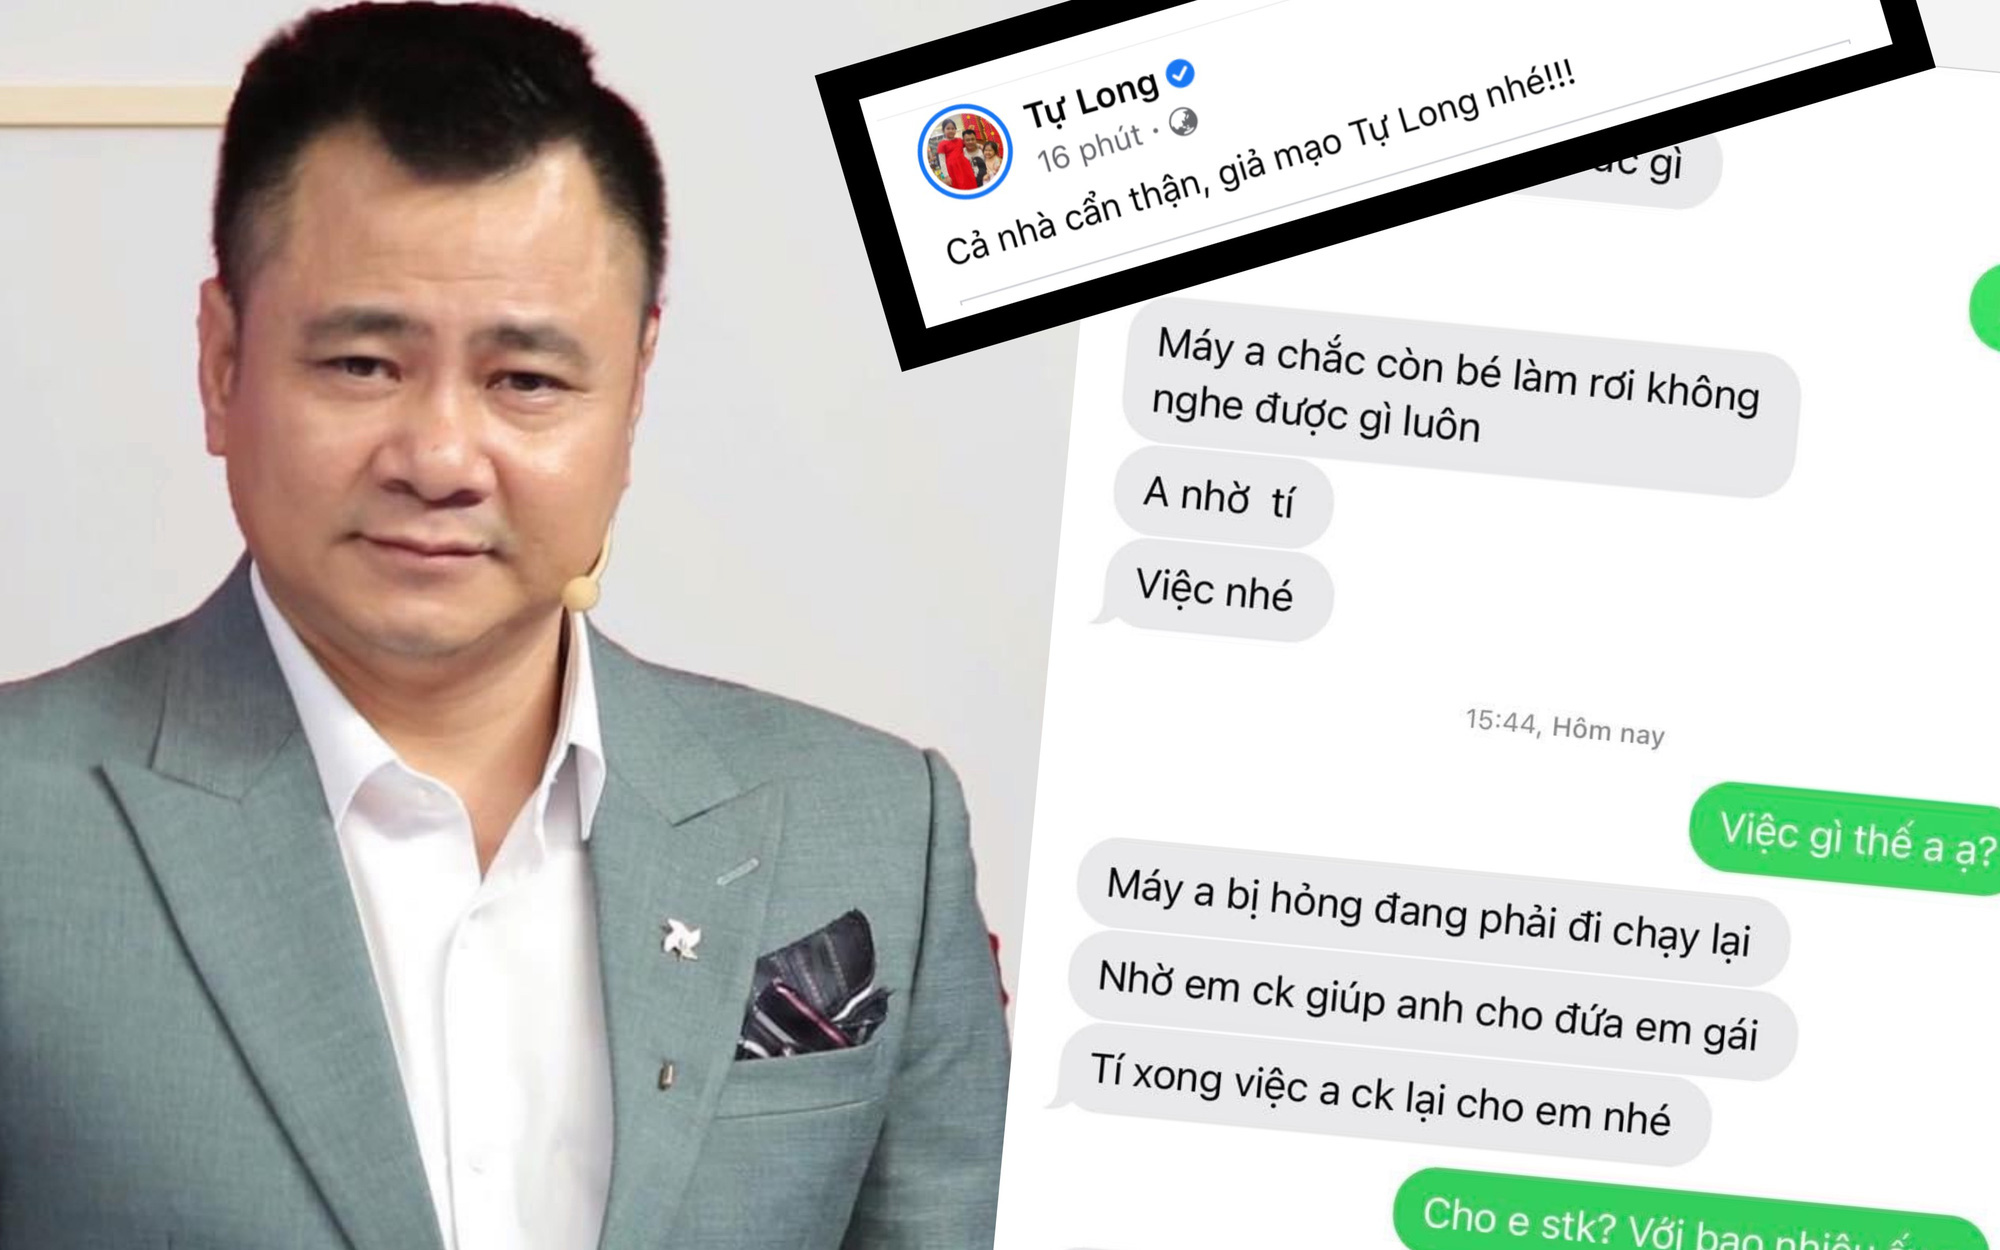 Nam nghệ sĩ hài nổi tiếng bị mạo danh đi lừa đảo với cách thức quen thuộc, netizen cần biết để tránh xa